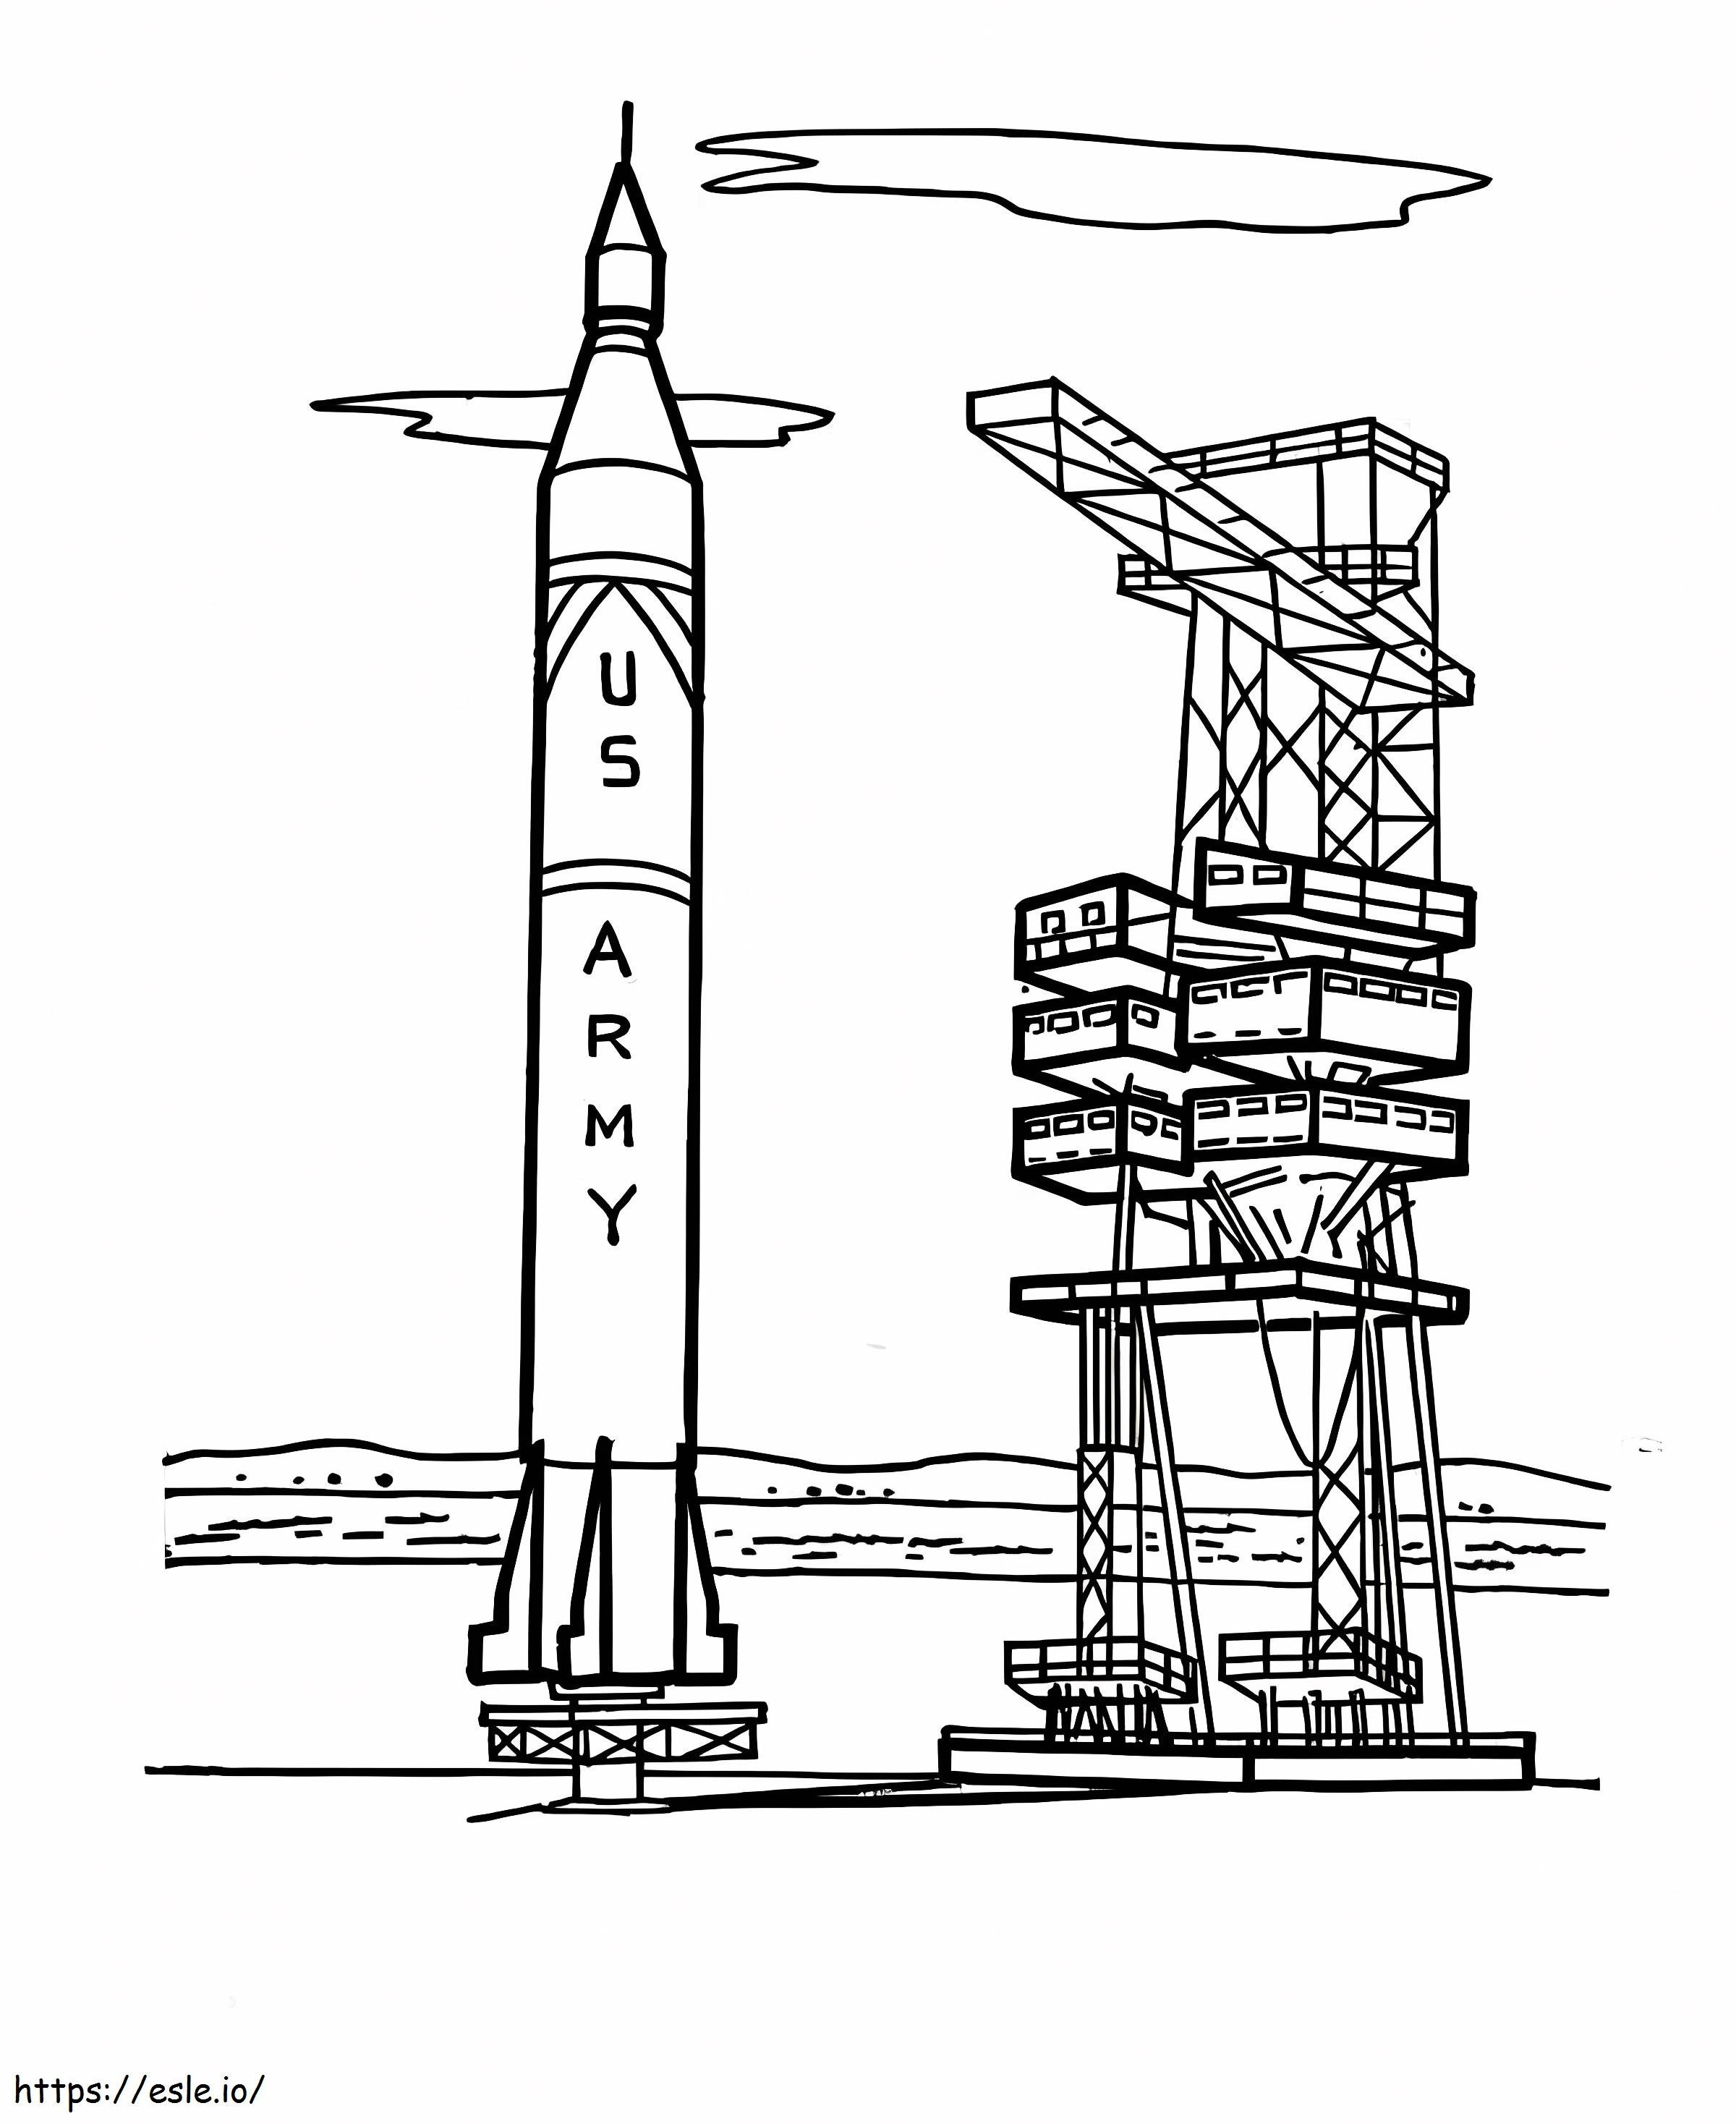 Raumschiff in der Nähe des Startturms ausmalbilder